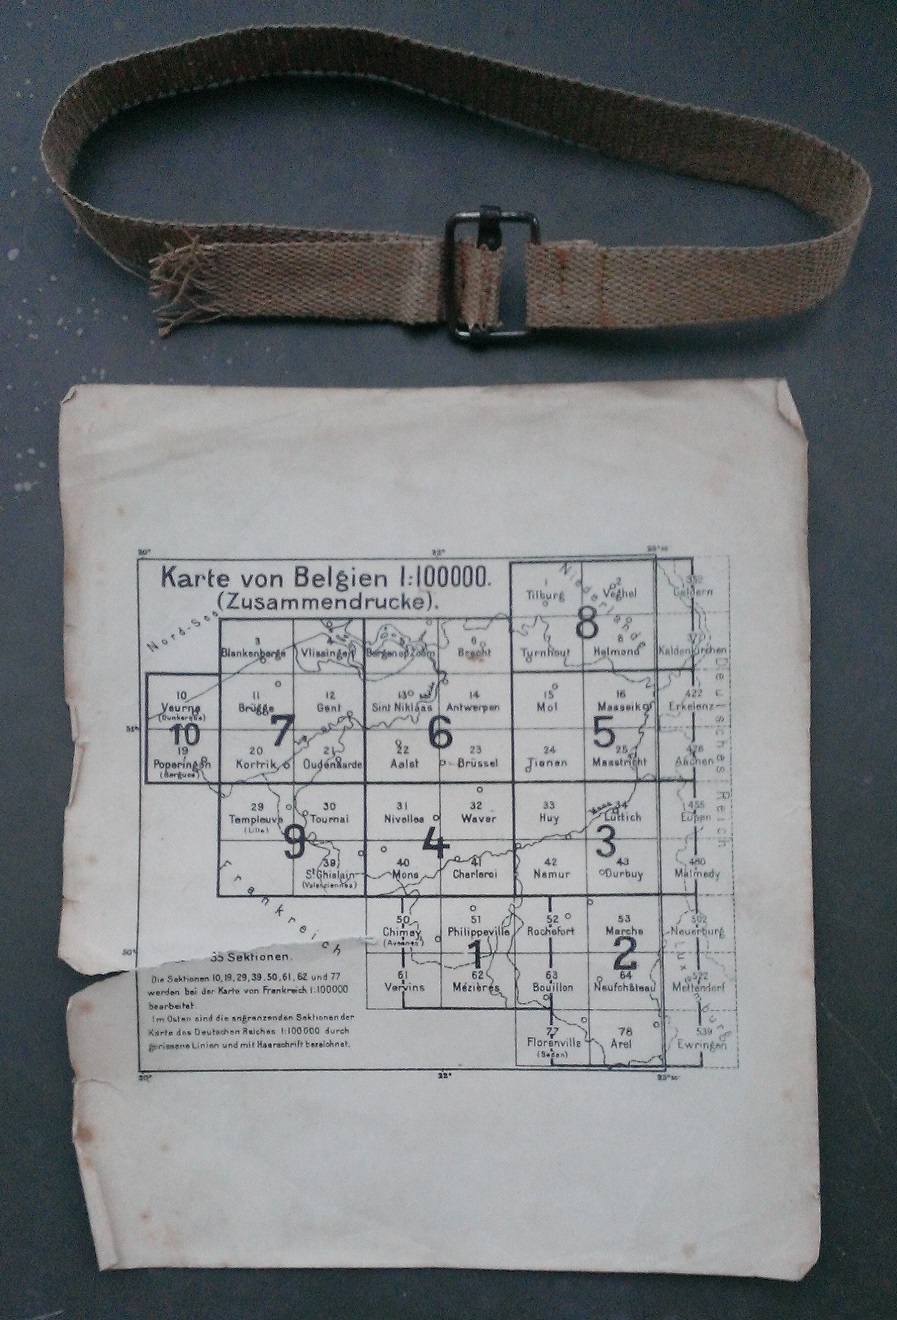 Cartes allemandes (1916) de la Belgique en 10 folios - Identification et prix   Wp_20330